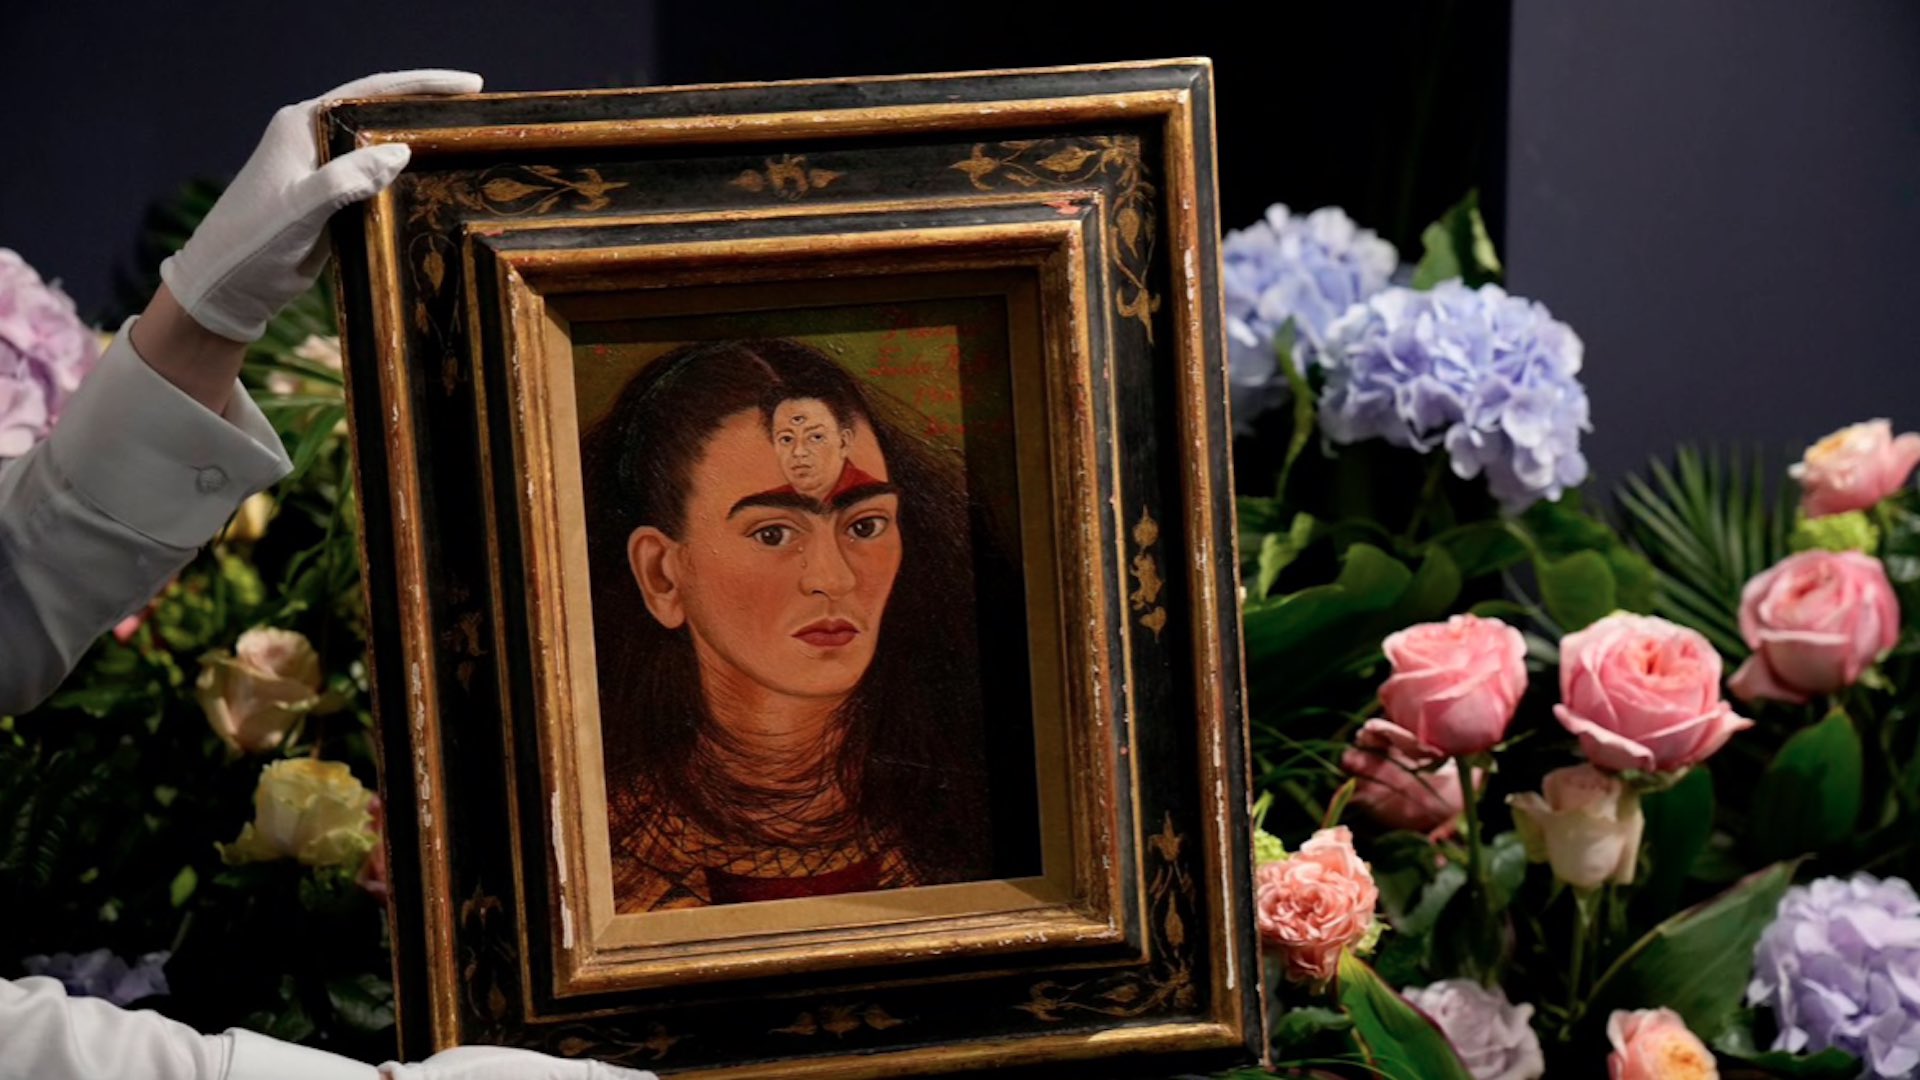 #MañanasX: Autorretrato de Frida Kahlo alcanzó precio récord en subasta